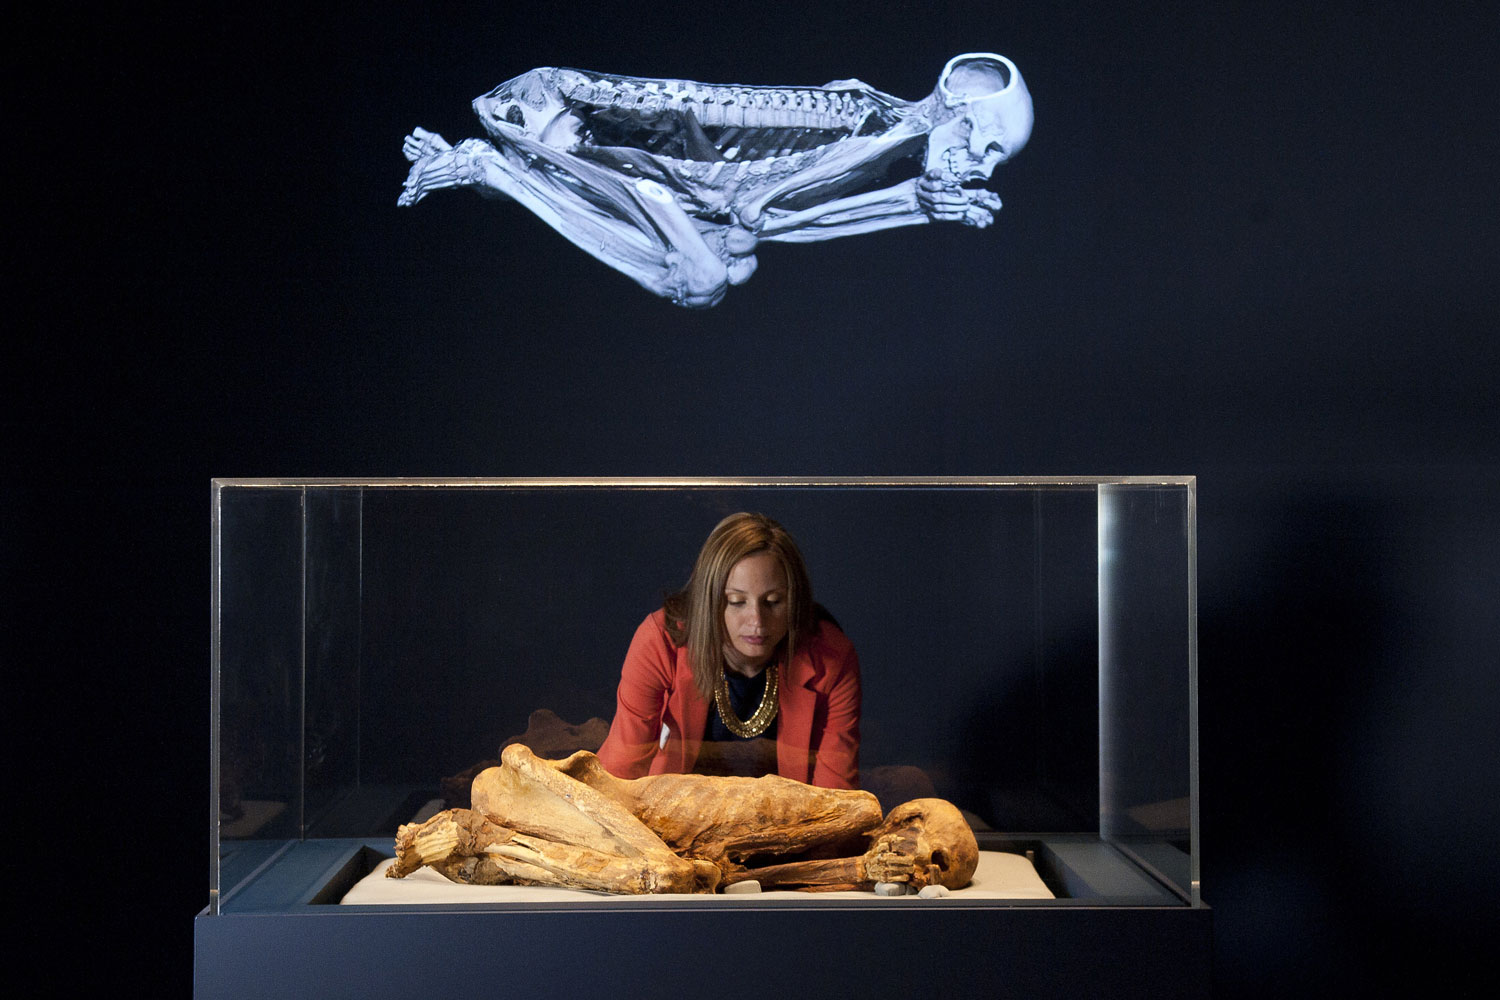 La exposición "Vidas antiguas, nuevos descubrimientos" permite explorar momias